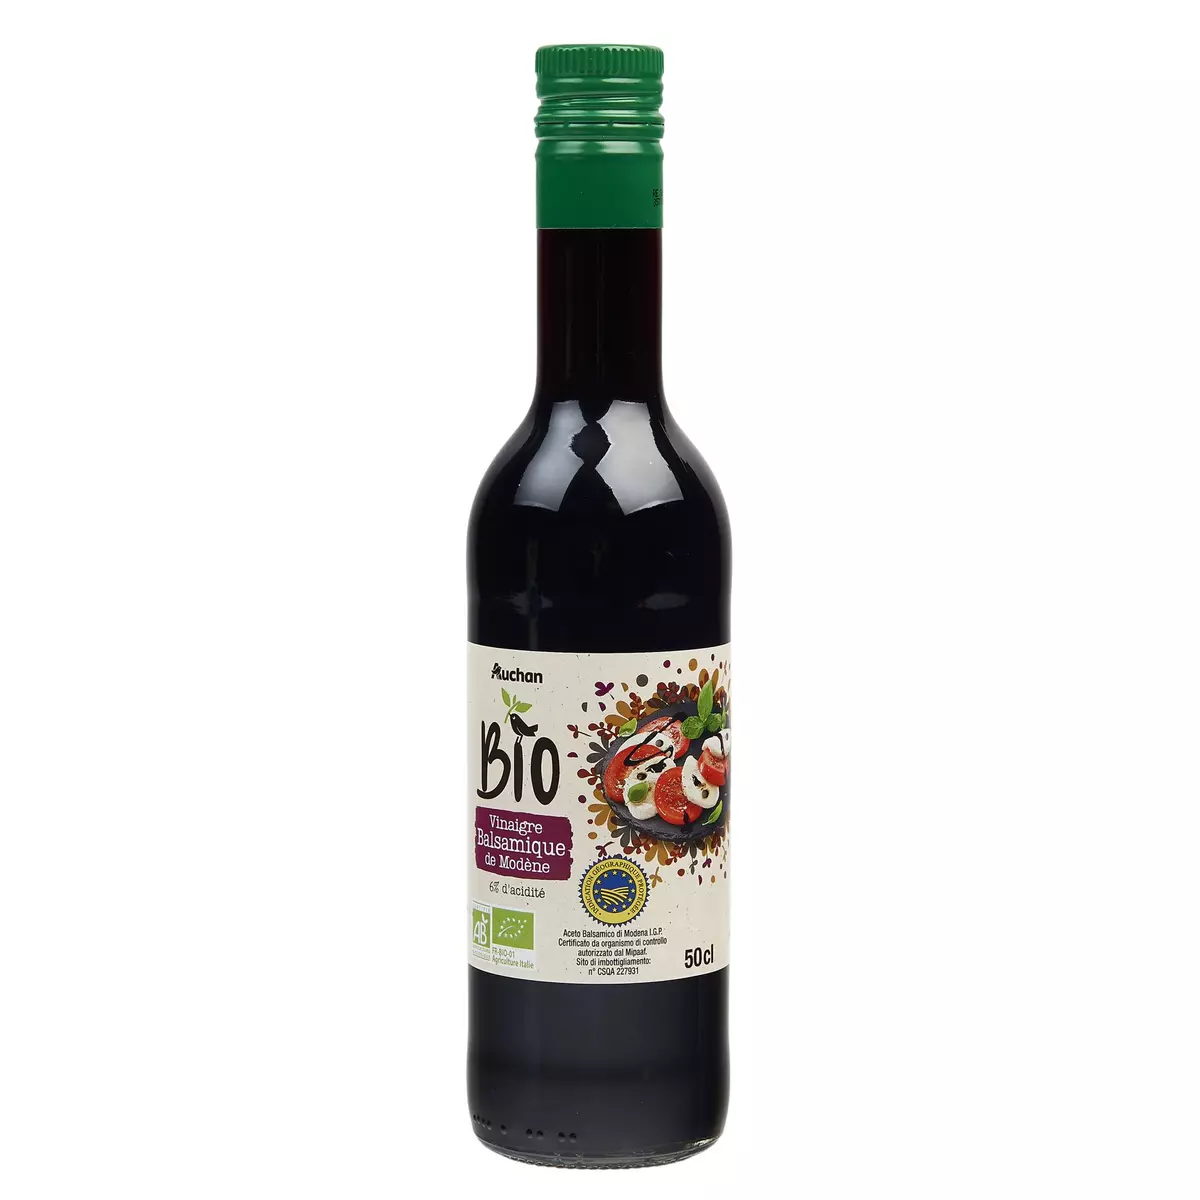 AUCHAN BIO Vinaigre balsamique de Modène 6% d'acidité 50cl